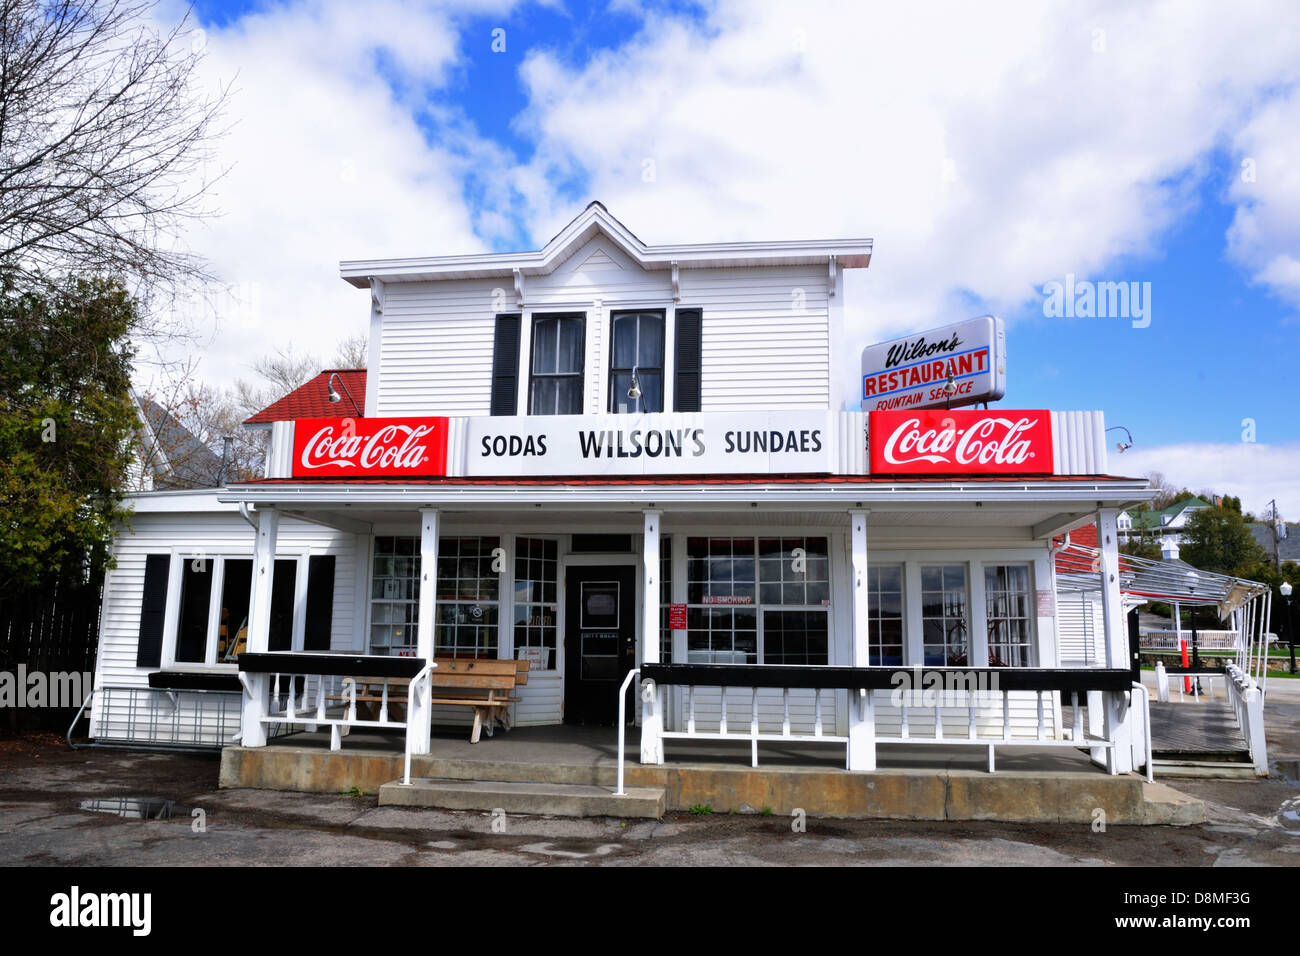 Wilson's ice cream parlor established in 1906, a landmark in Ephraim, Door County, Wisconsin Stock Photo